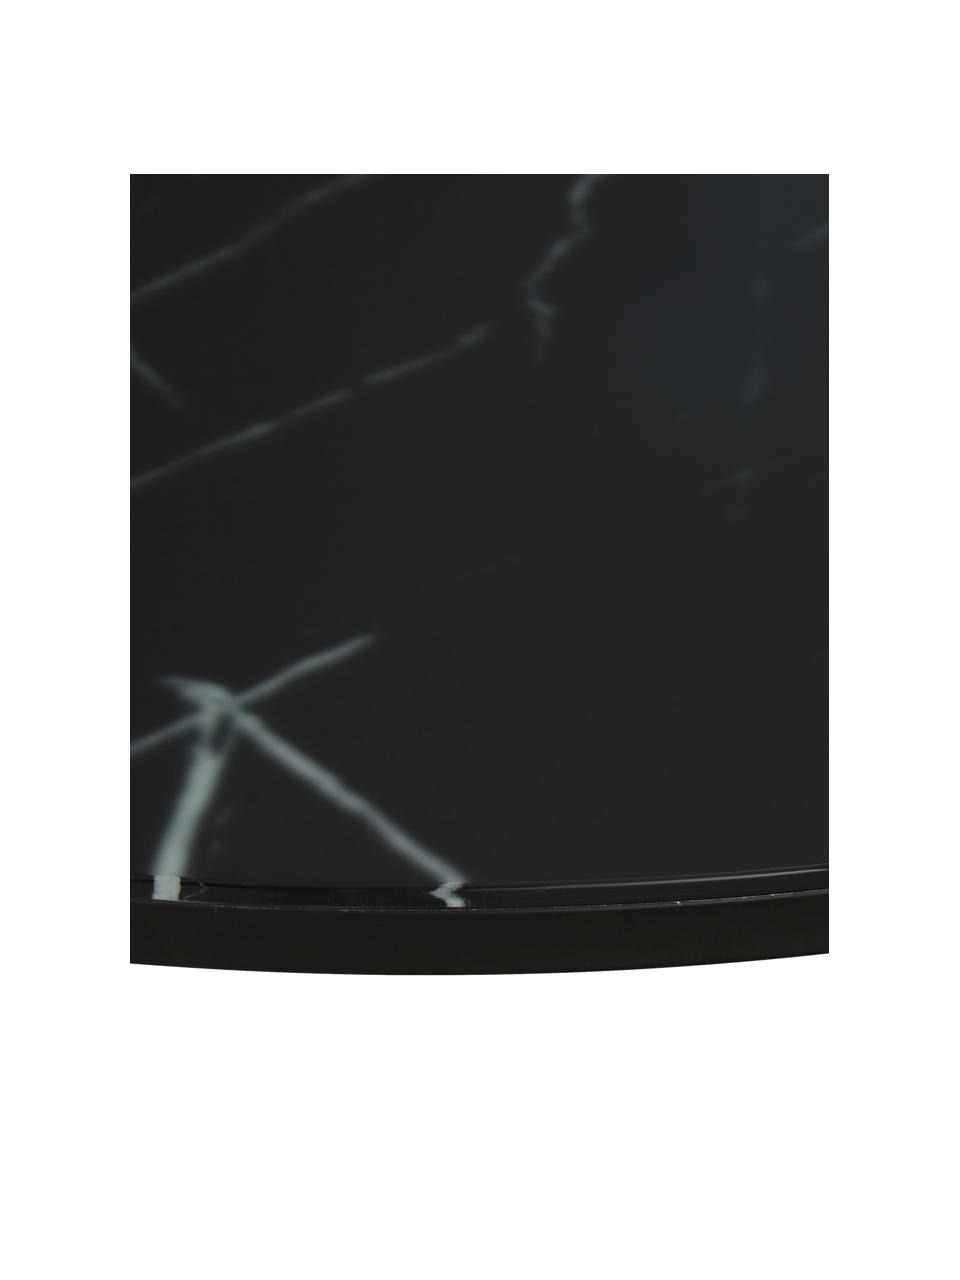 Kulatý konferenční stolek s mramorovanou skleněnou deskou Antigua, Mramorový vzhled, černá, Ø 80 cm